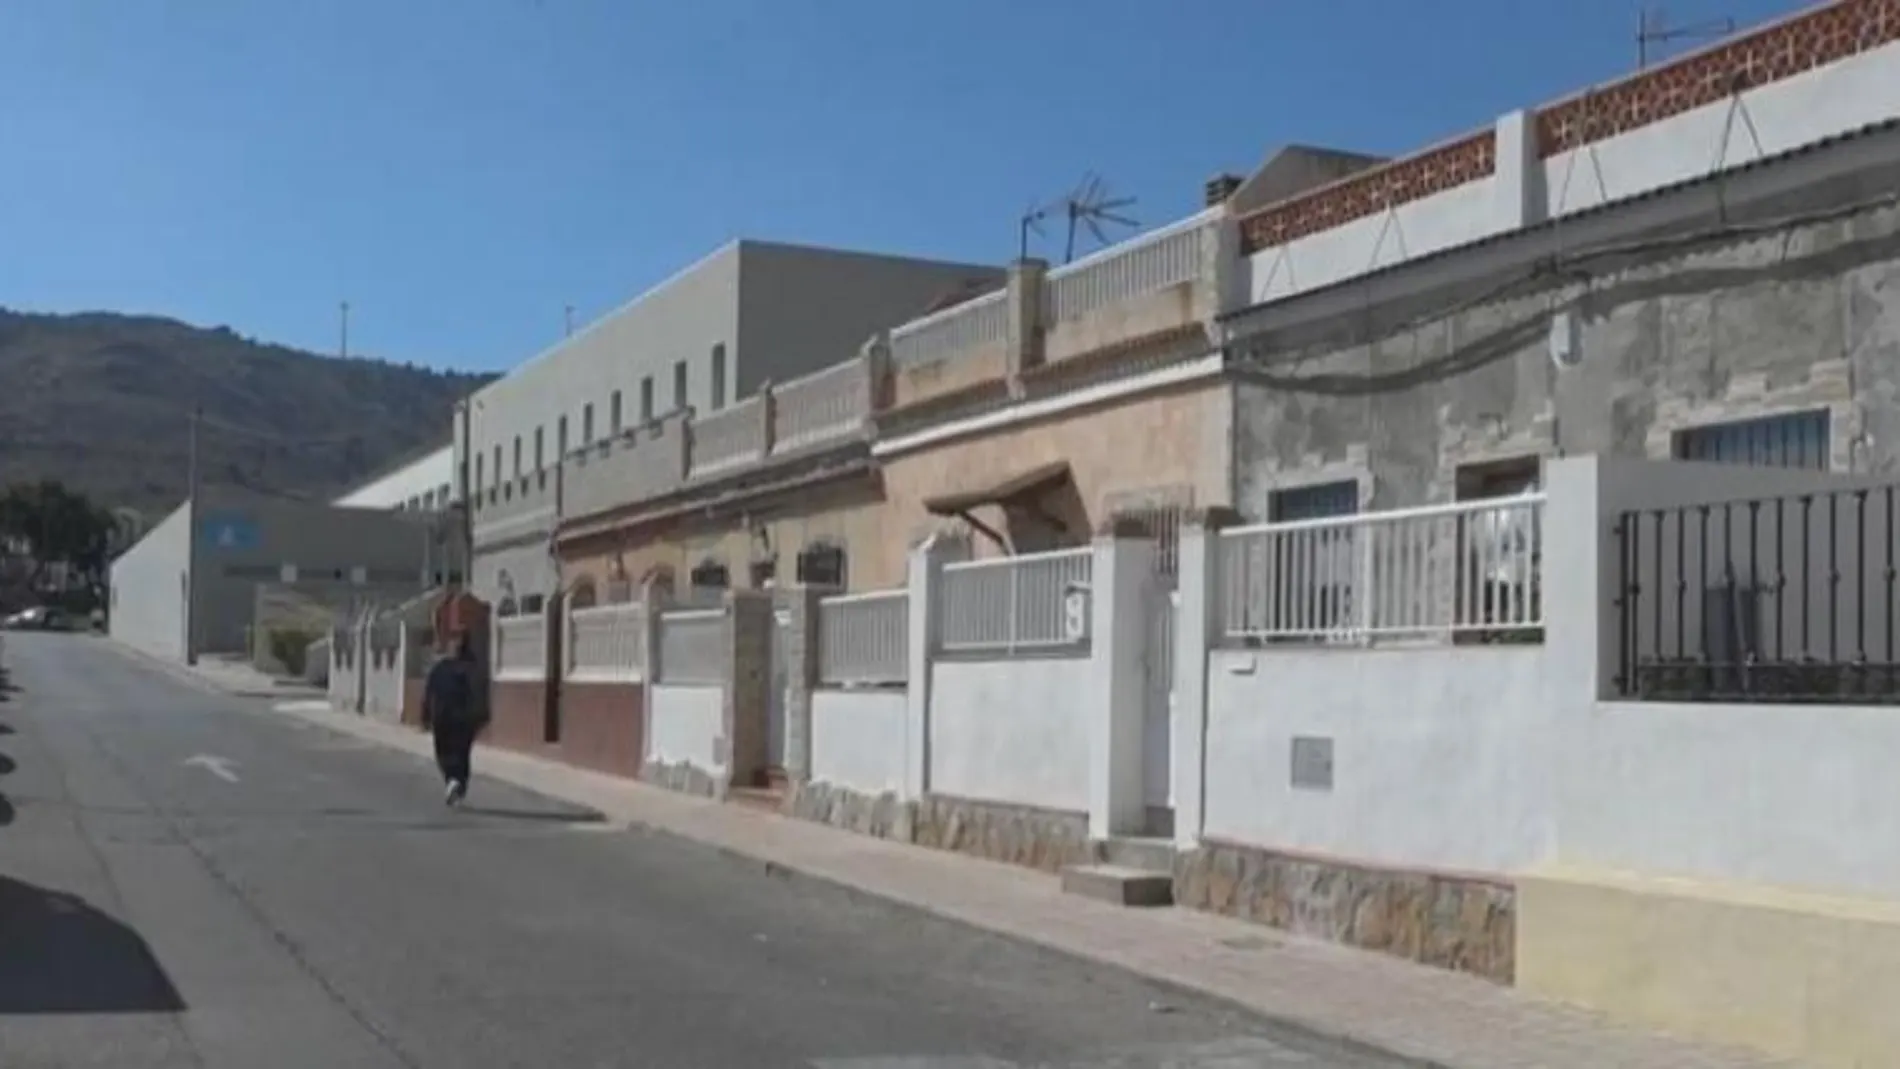 El barrio de Santa Bárbara de La Unión es donde se encuentra el domicilio familiar donde se halló el cuerpo del pequeño de doce años que se había ahorcado